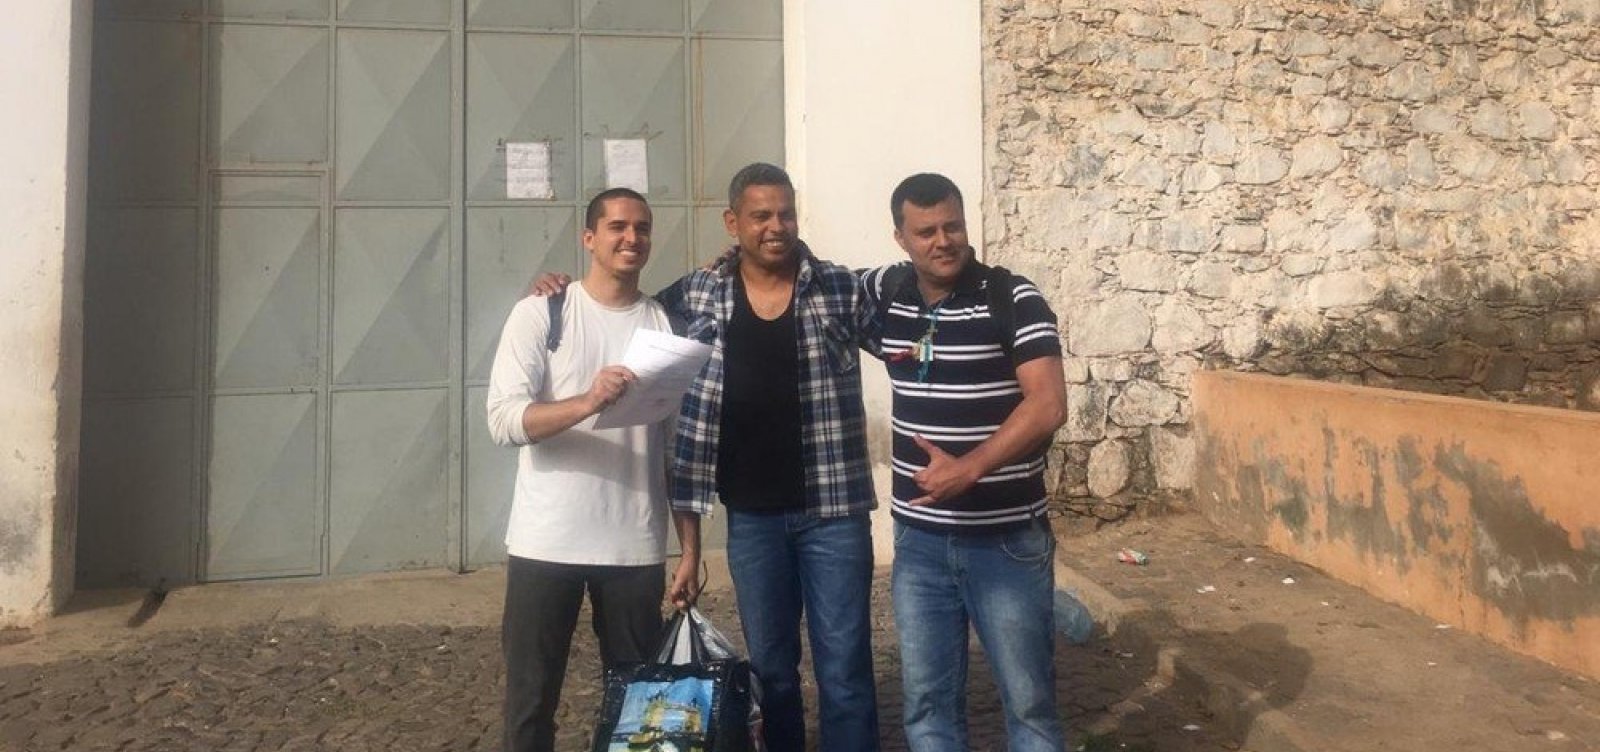 Velejadores baianos presos desde 2017 em Cabo Verde são libertados